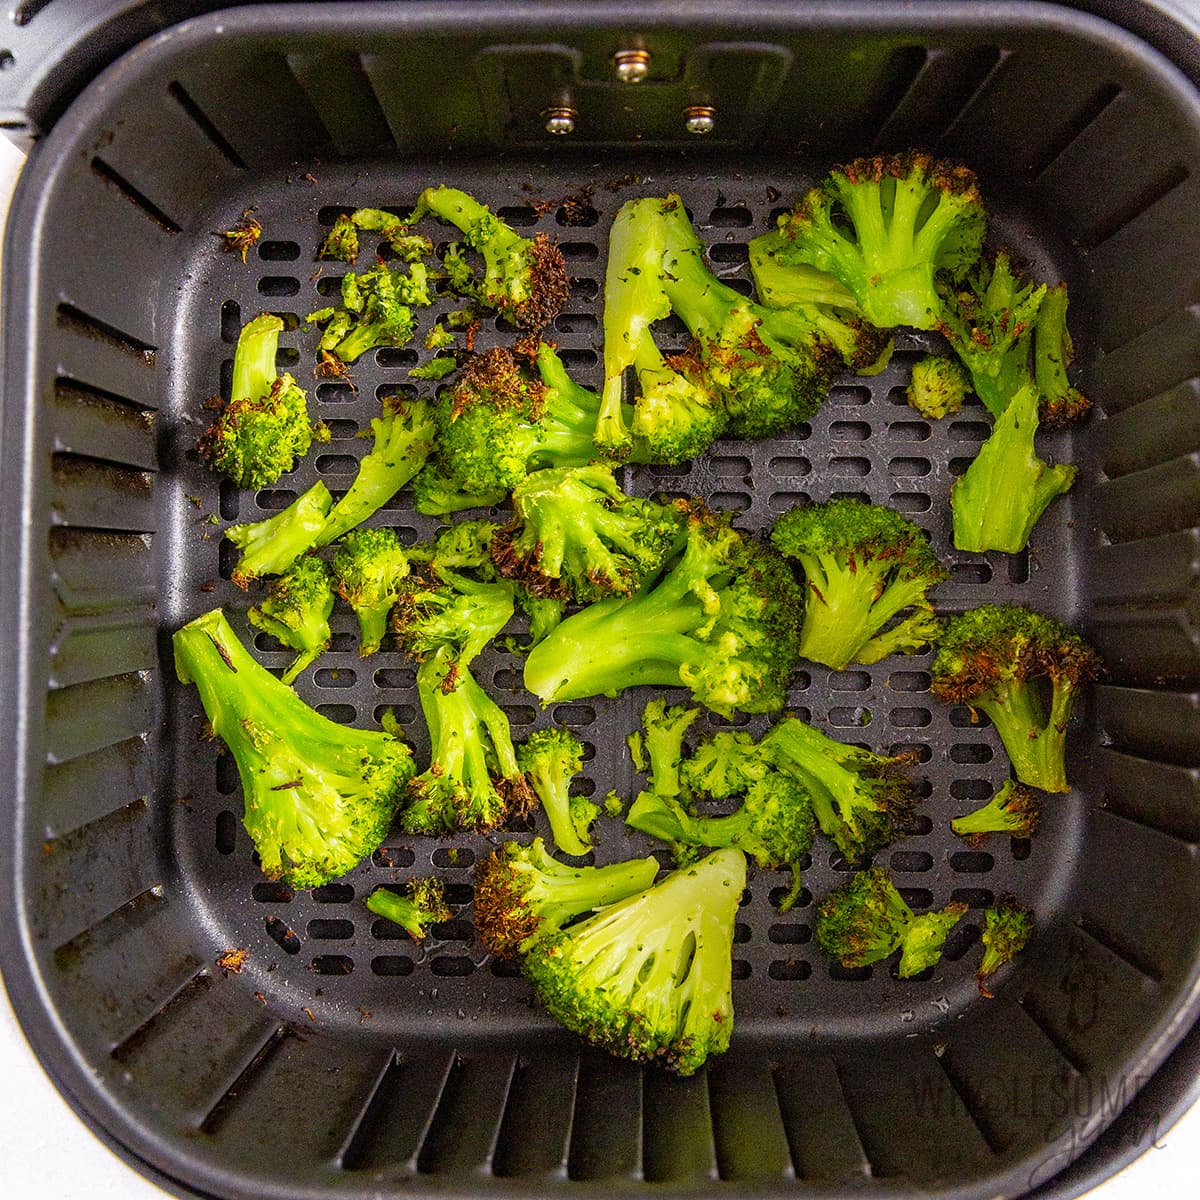 Cooked frozen broccoli in air fryer basket.